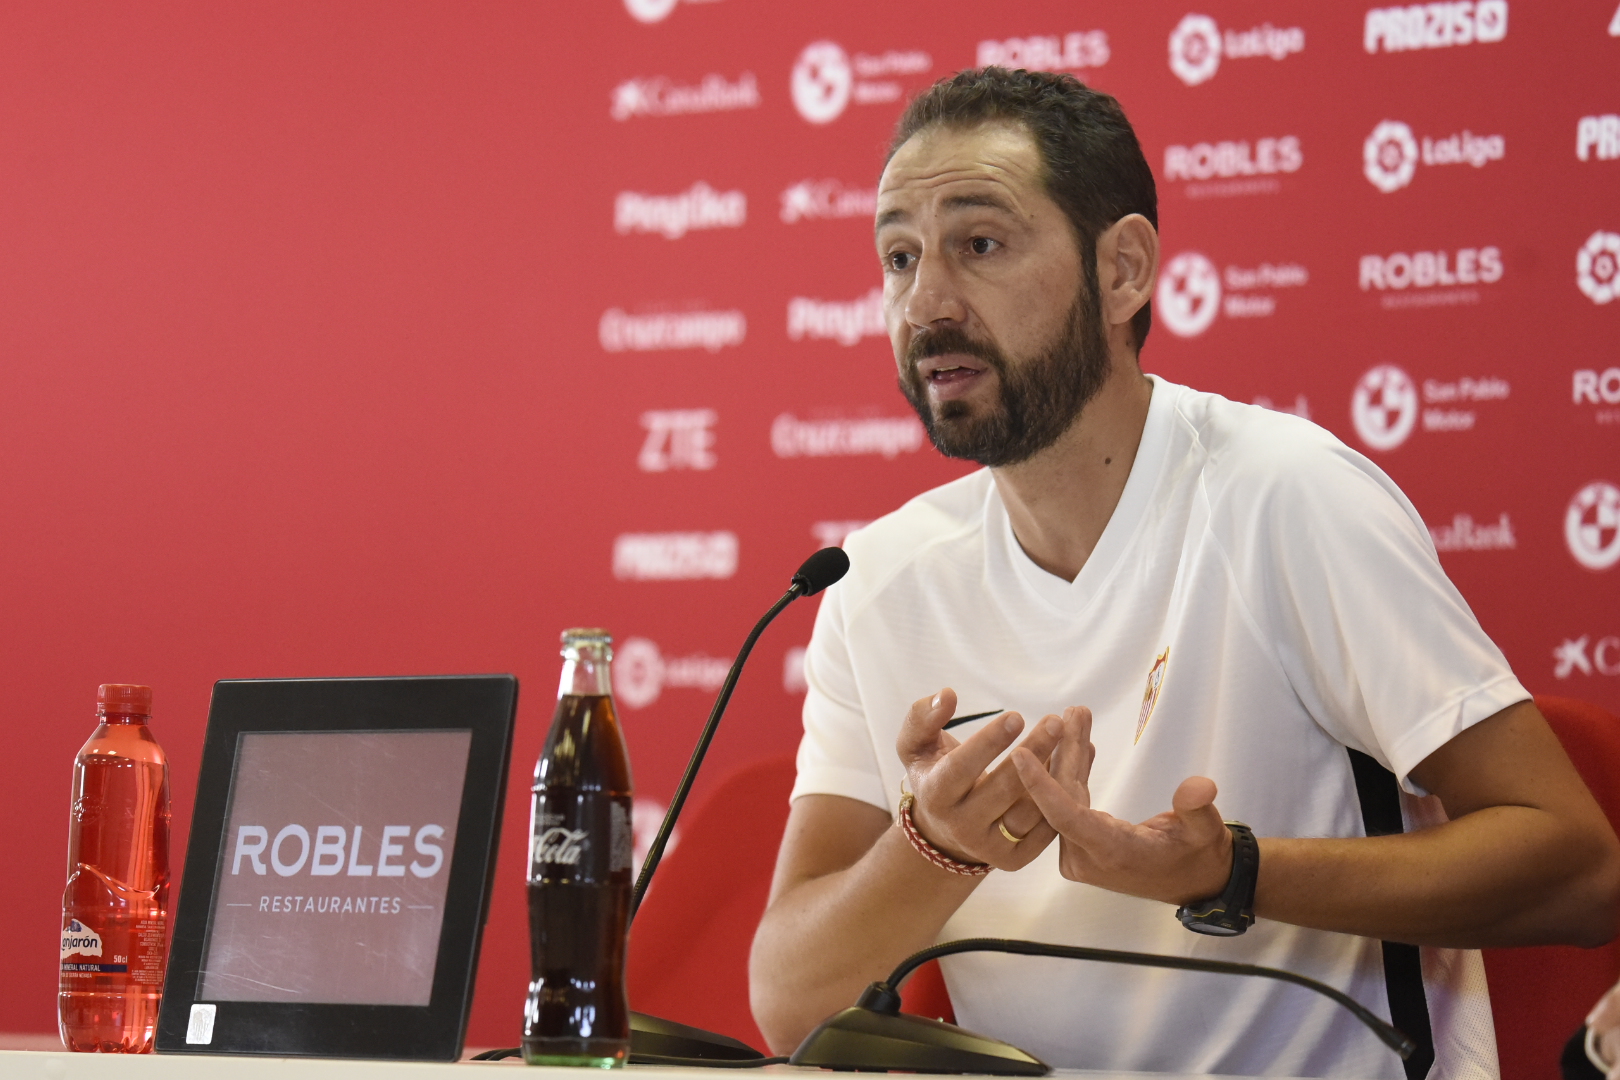 Pablo Machín entrenador del Sevilla FC